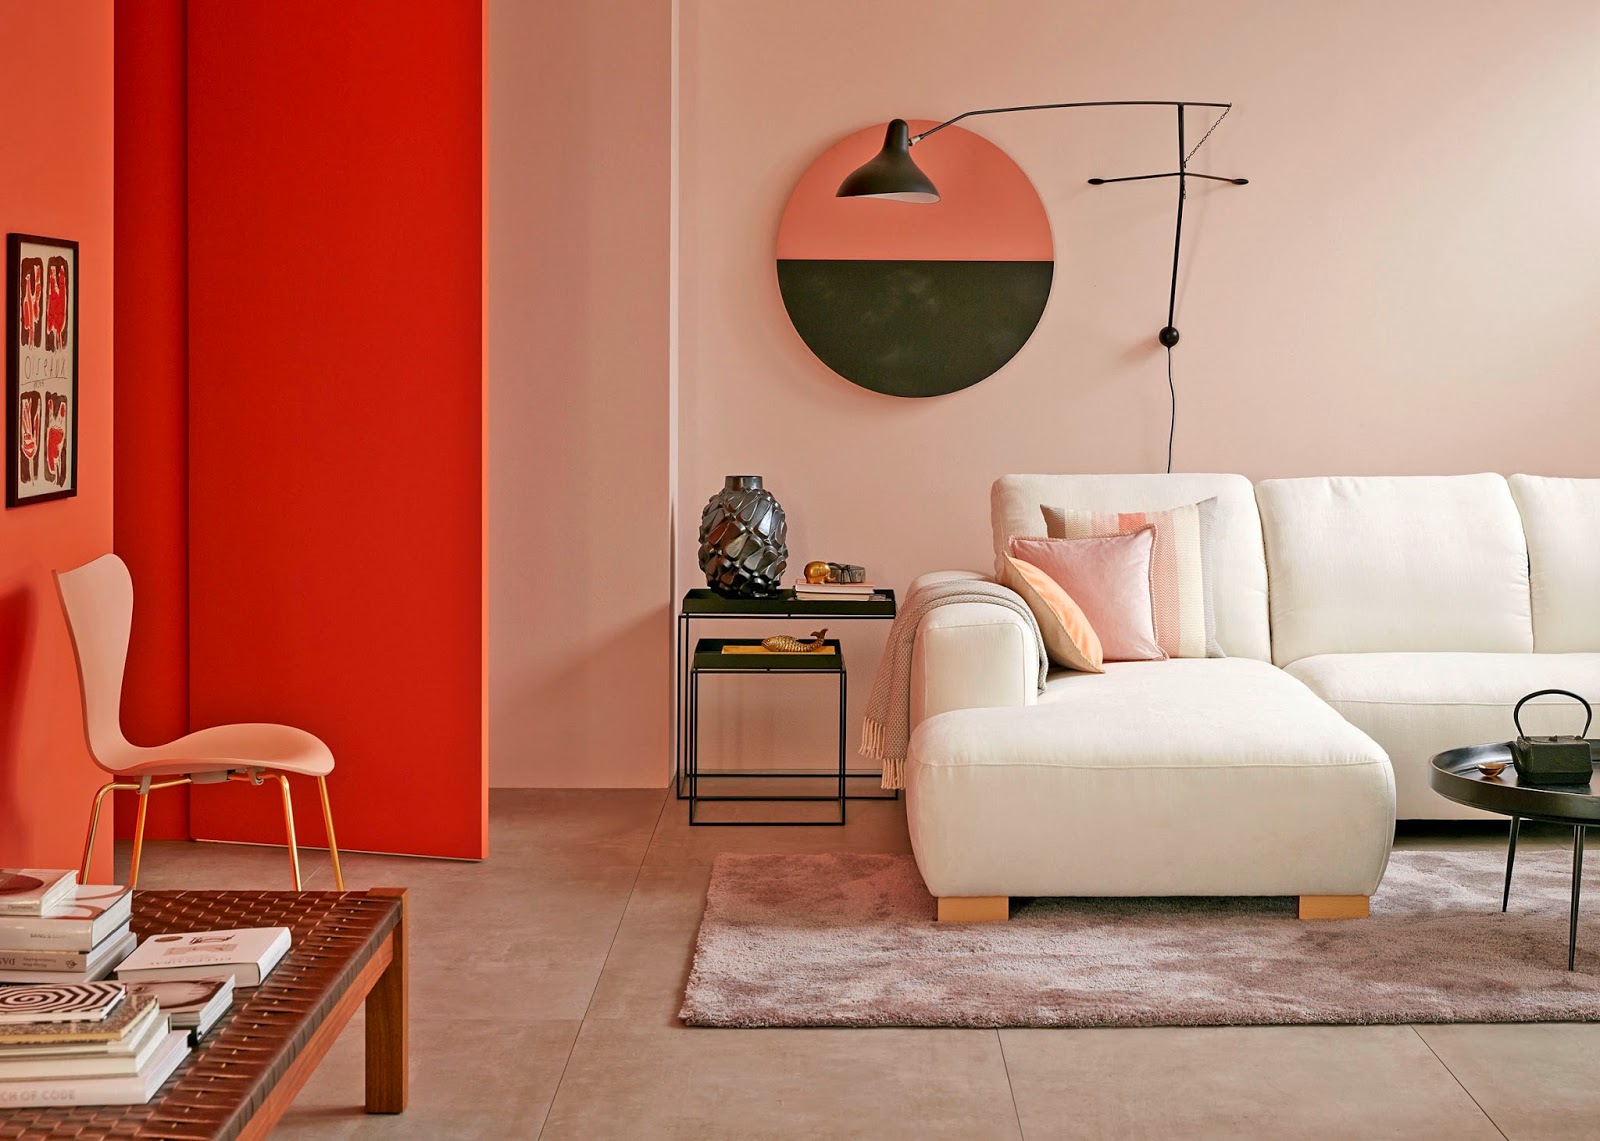 xu hướng màu sắc trong thiết kế nội thất 2019